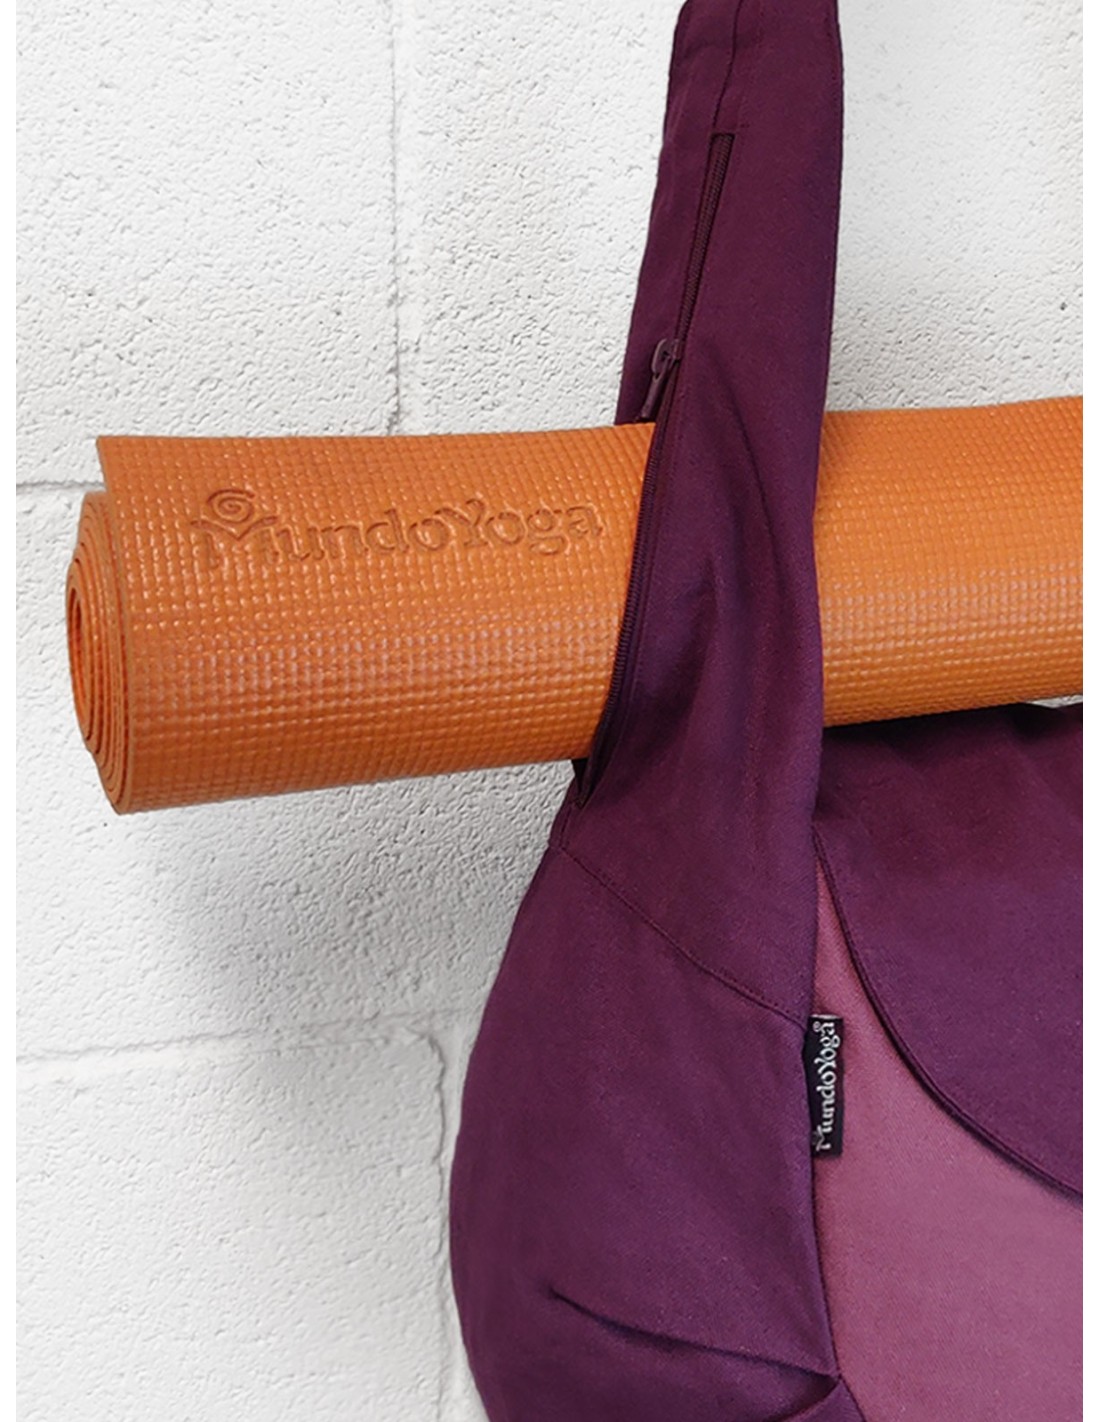 Bag to transport your zafu + yoga mat